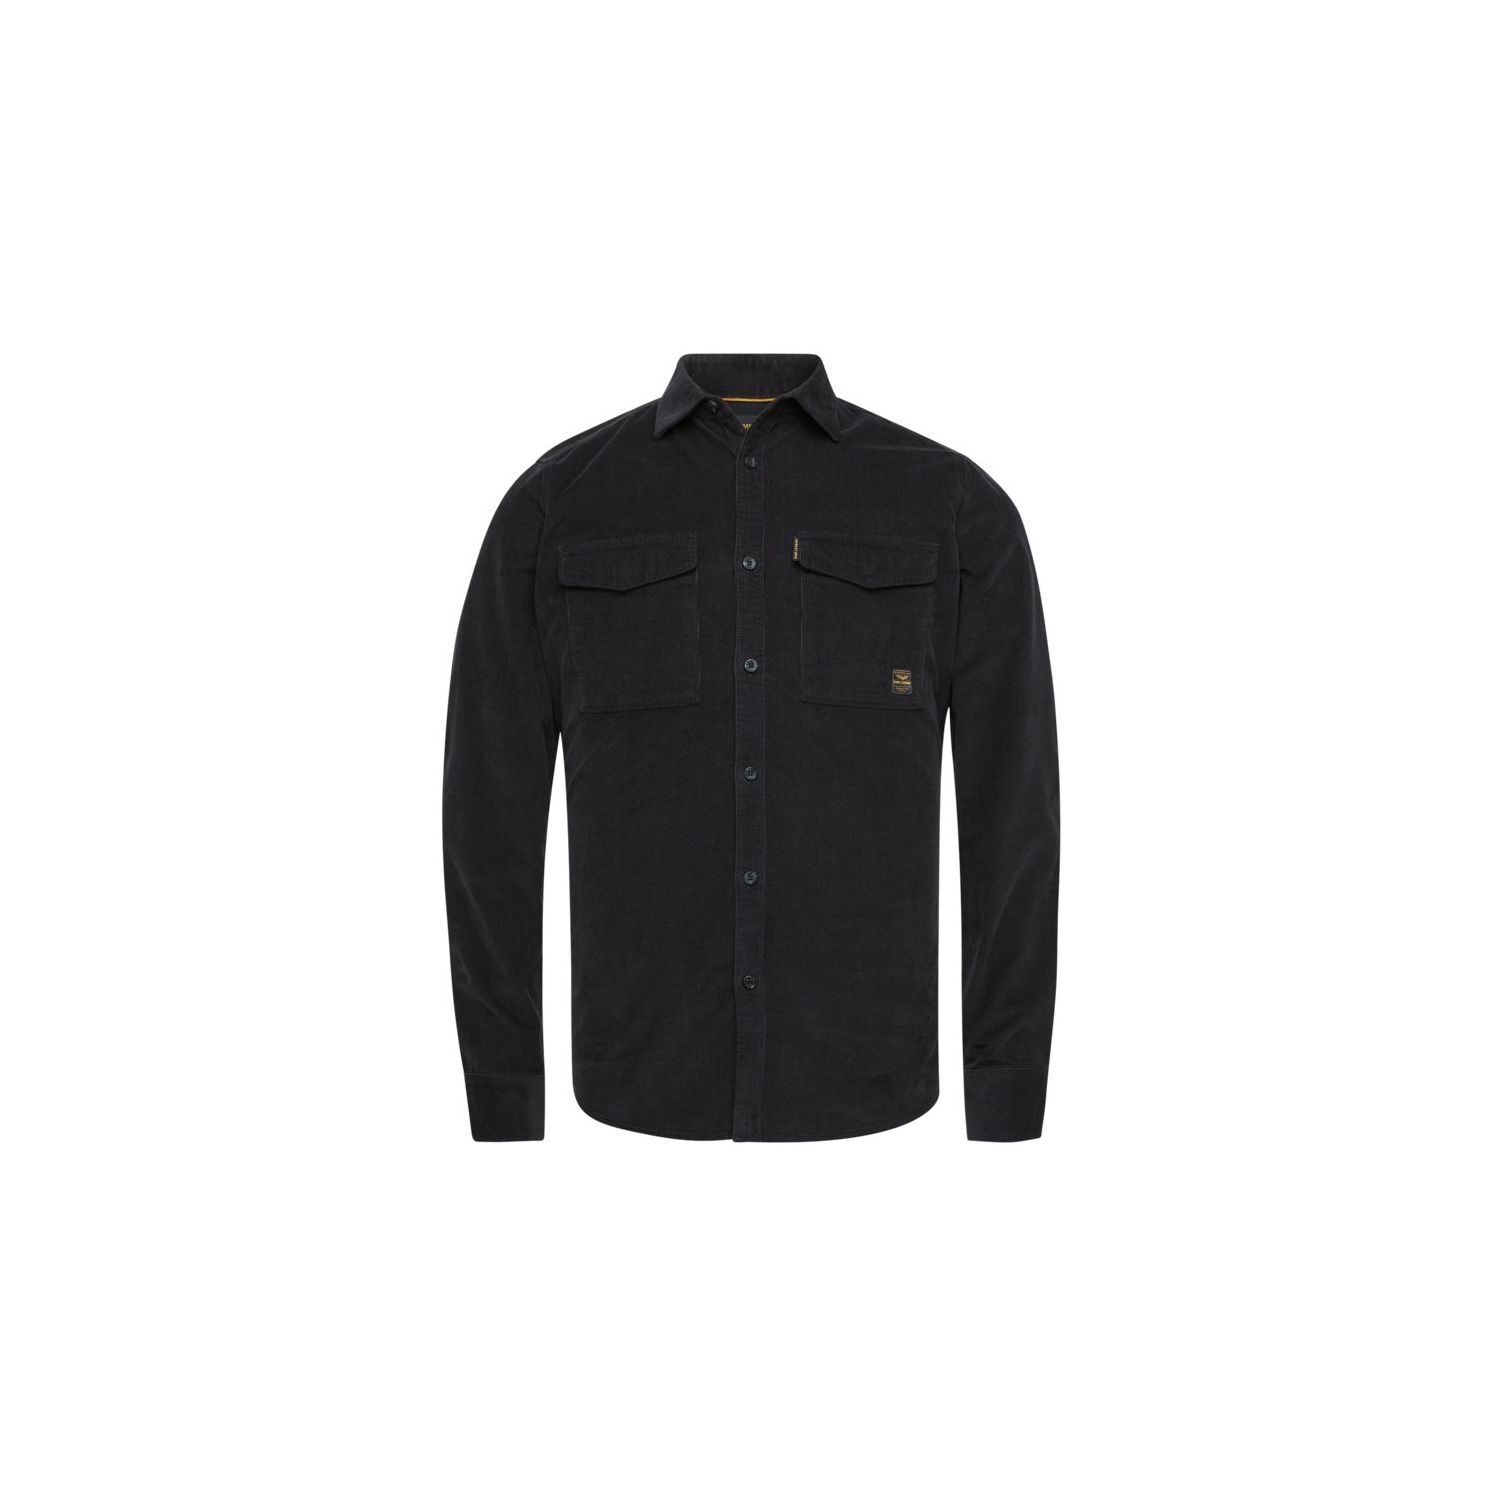 PME Legend shirt fine cotton corduroy black